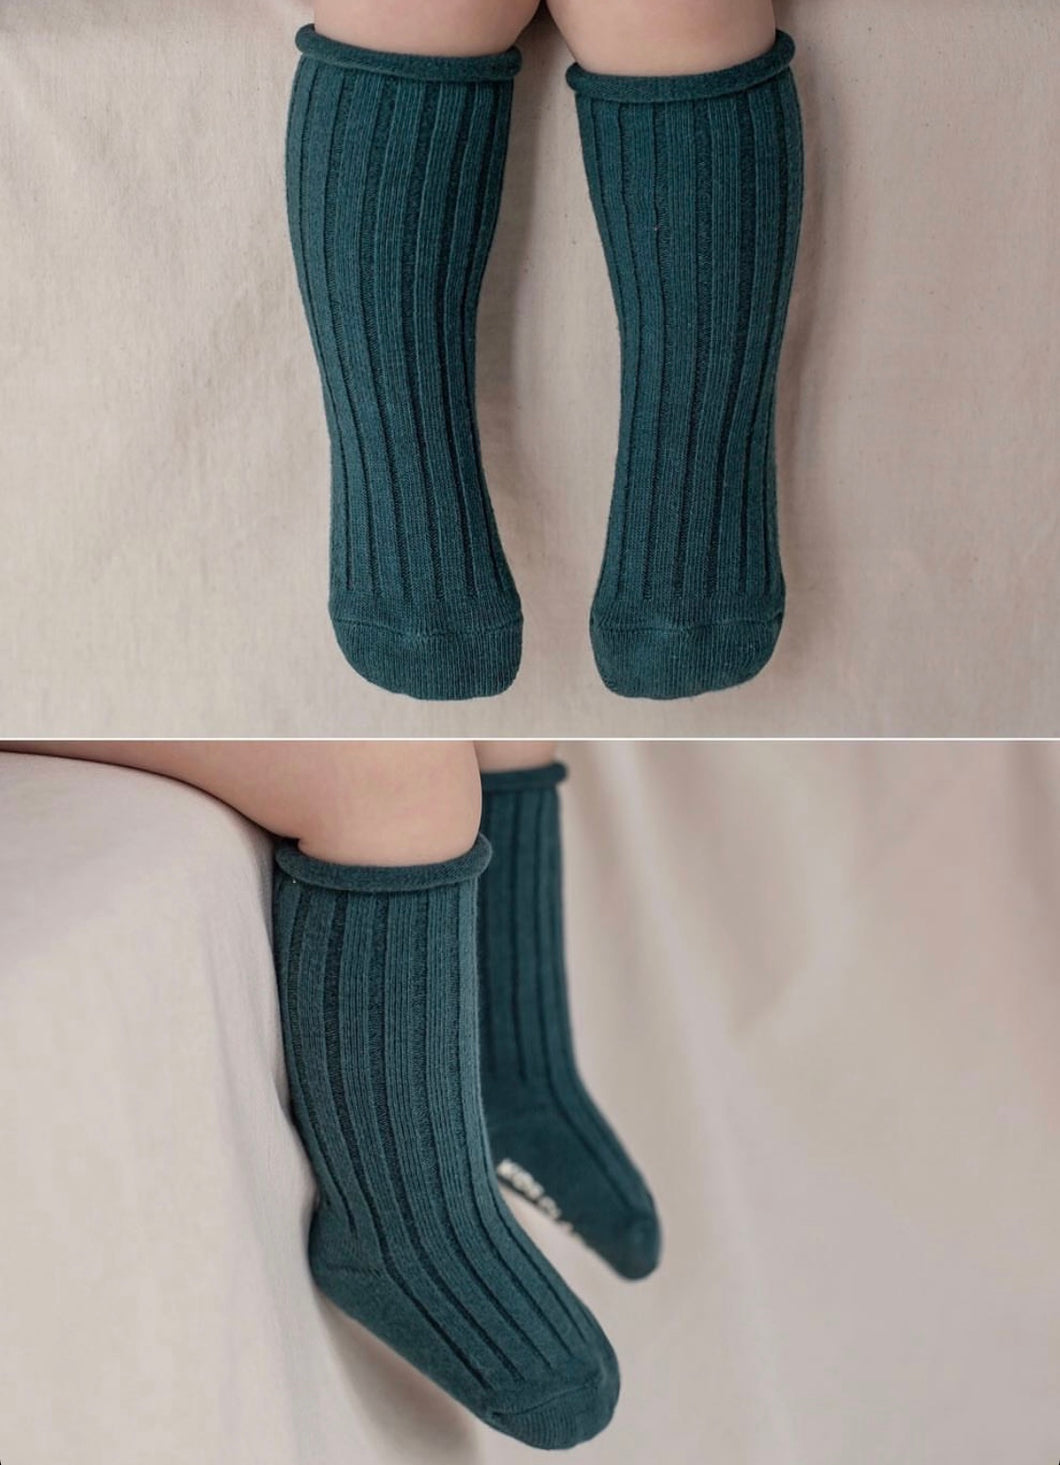 Green knee socks